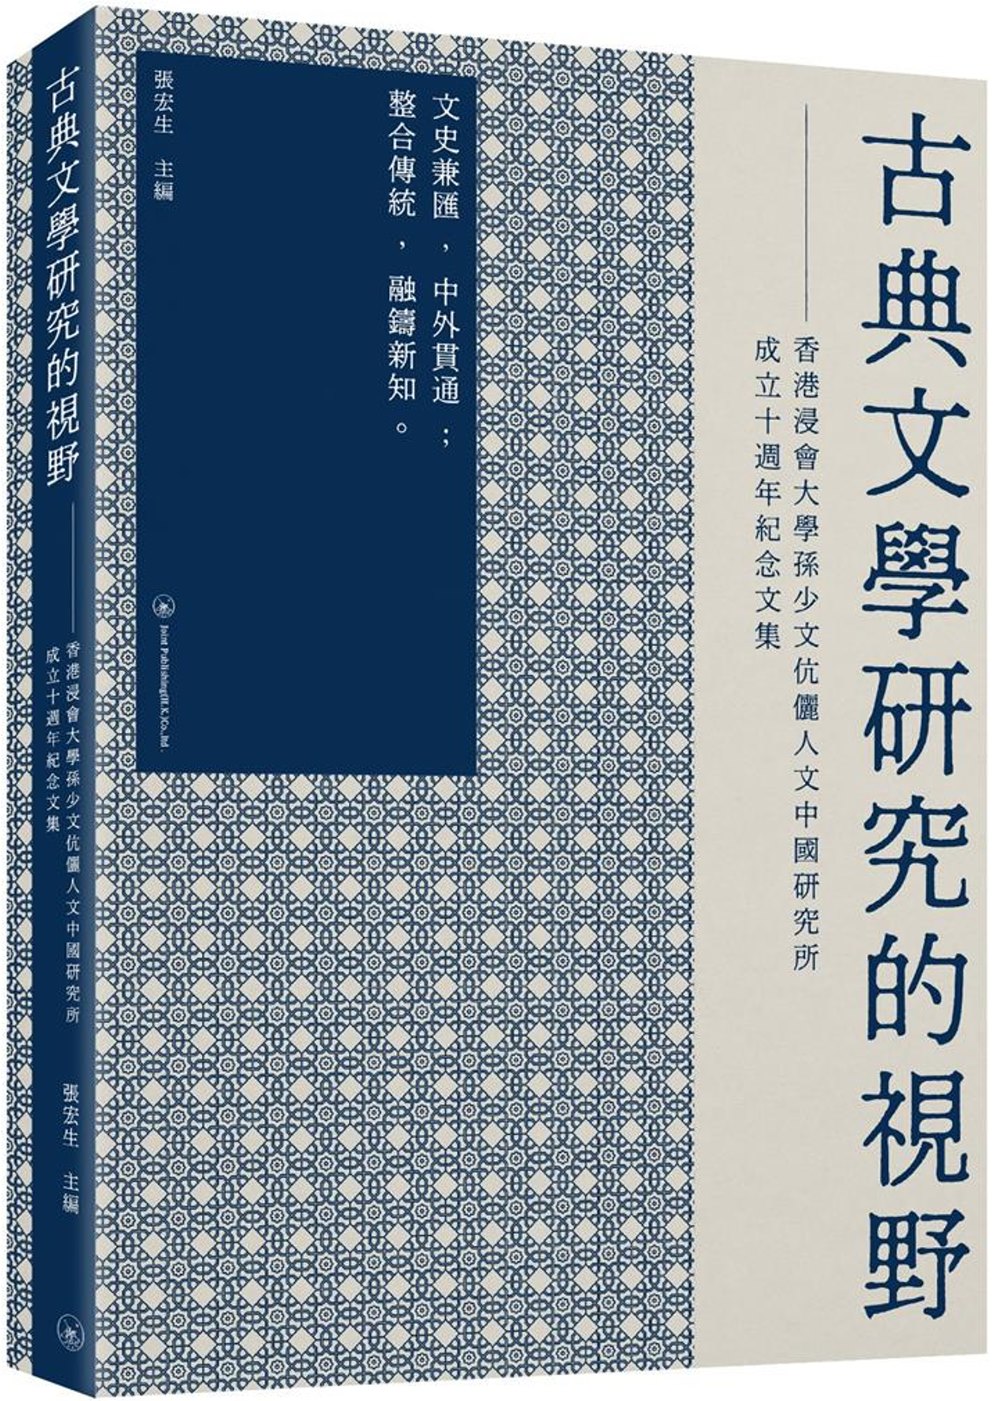 古典文學研究的視野：香港浸會大學孫少文伉儷人文中國研究所成立十週年紀念文集